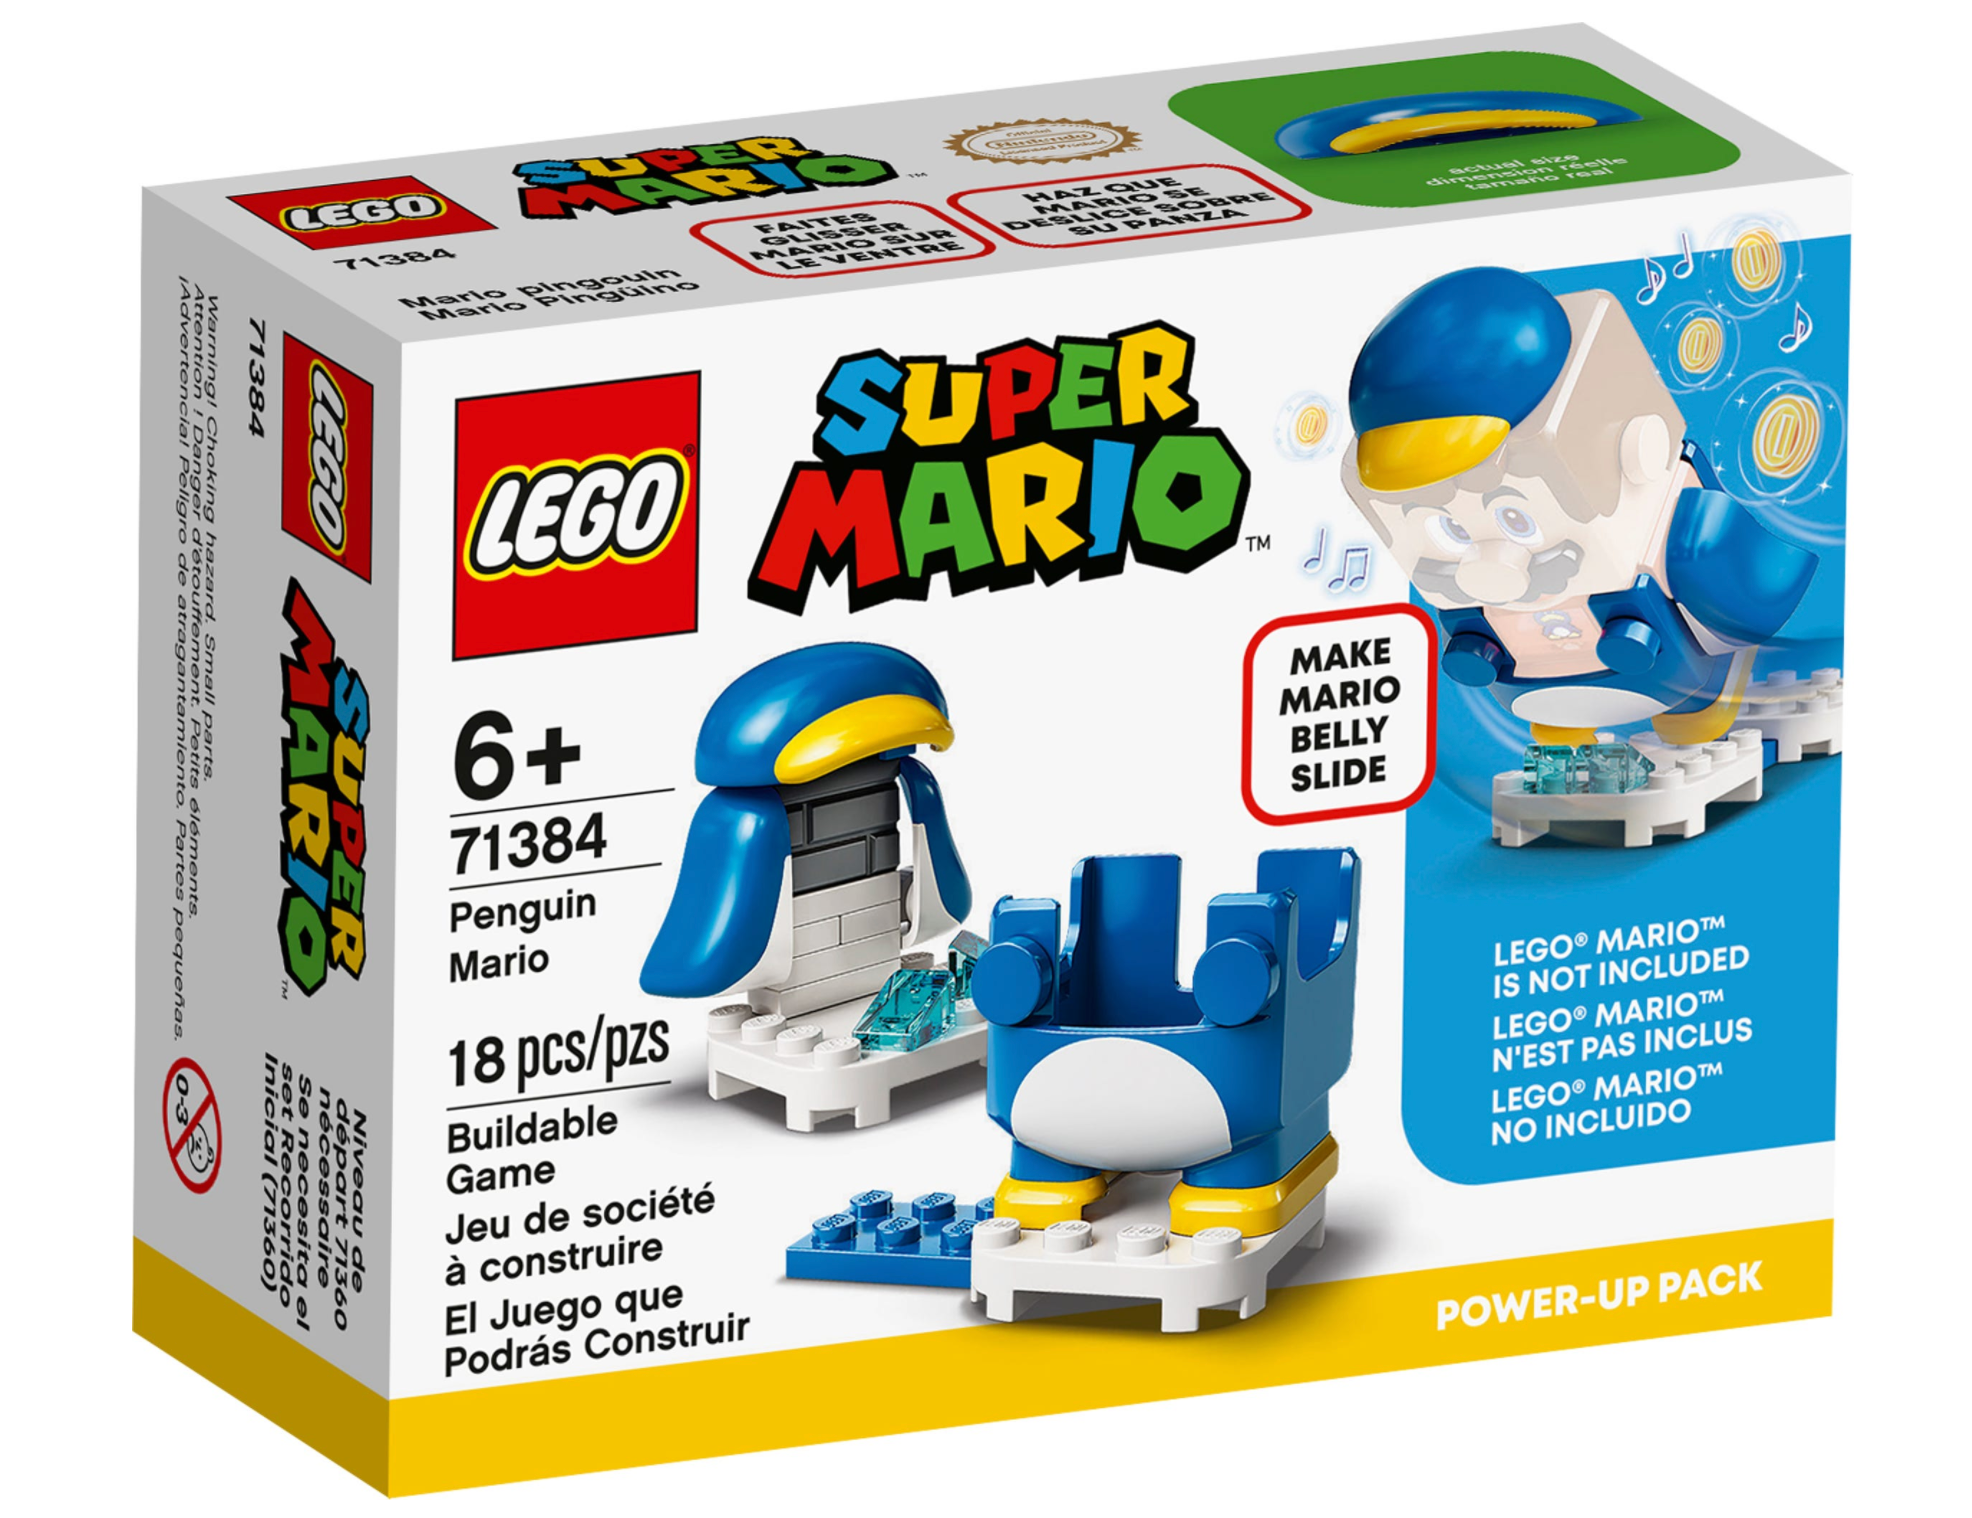 LEGO: Super Mario - Penguin Mario Power-Up Pack